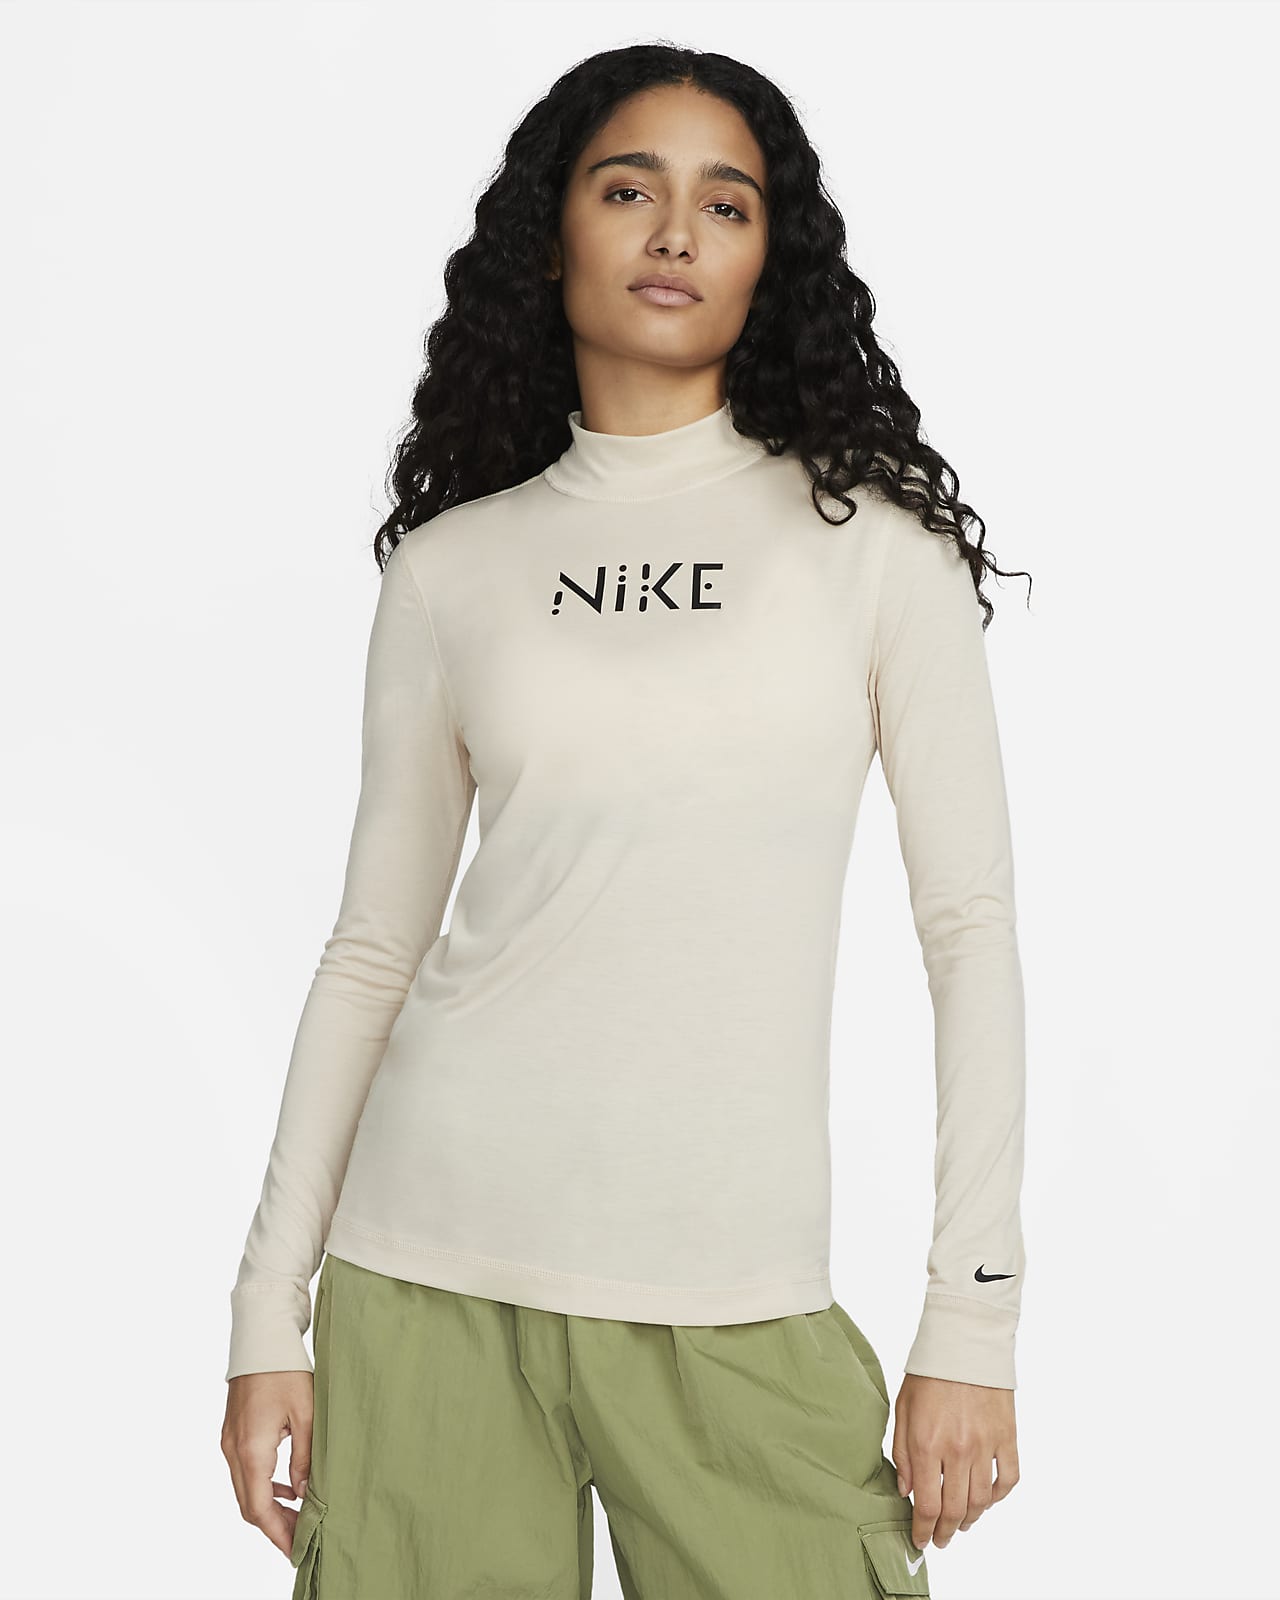 Playera de manga larga y ajuste entallado cuello alto para mujer Serena Williams Design Crew. Nike.com